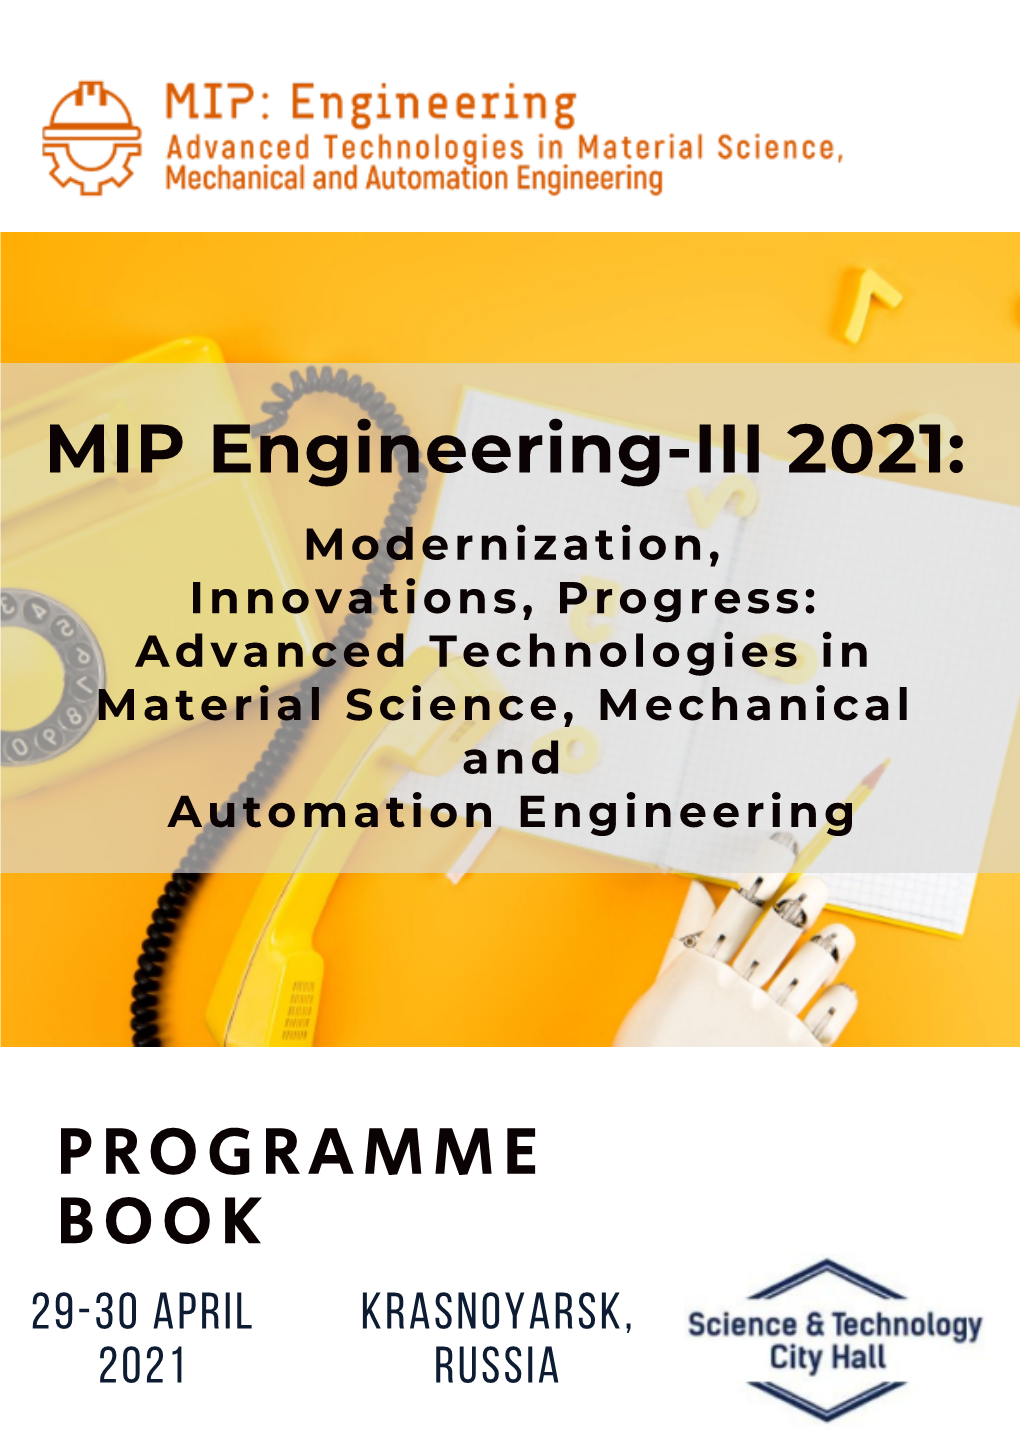 PROGRAMME BOOK MIP Engineering-III 2021